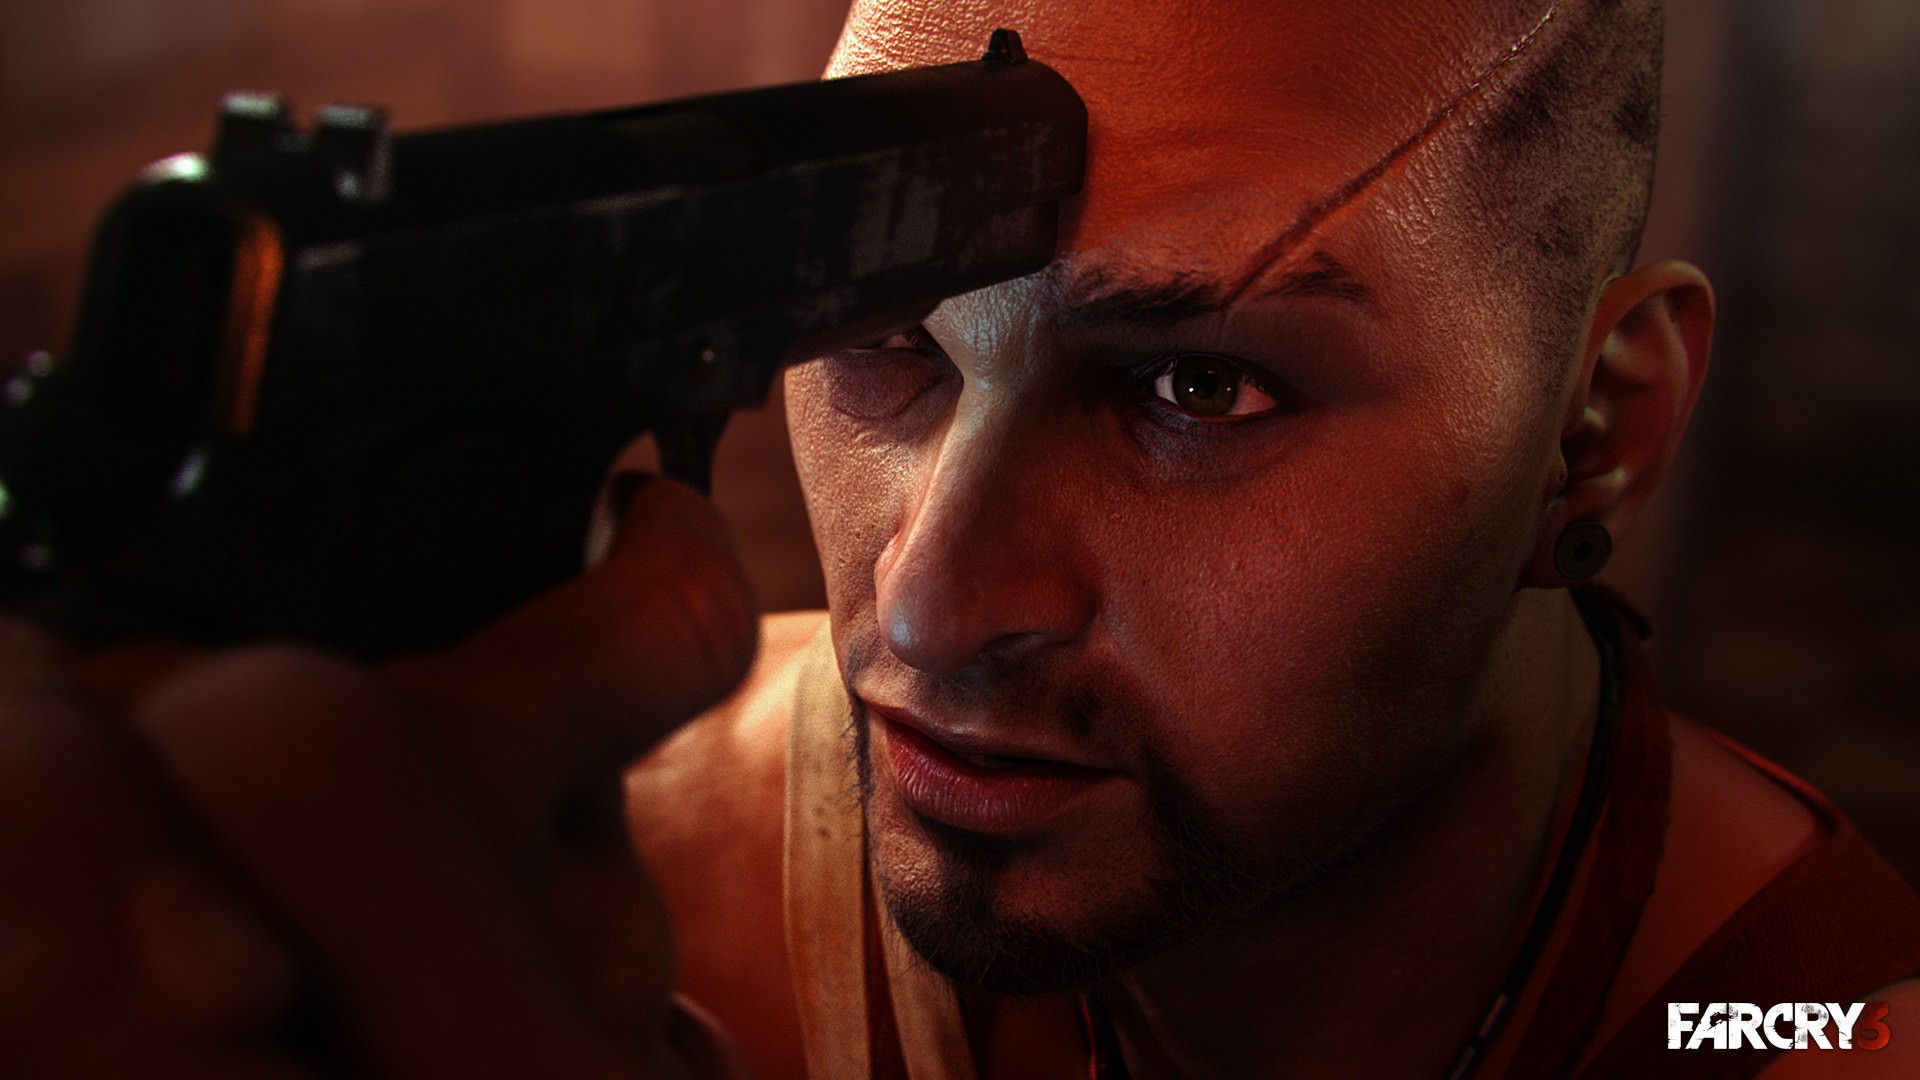 Descarga gratuita de fondo de pantalla para móvil de Far Cry 3, Far Cry, Videojuego.